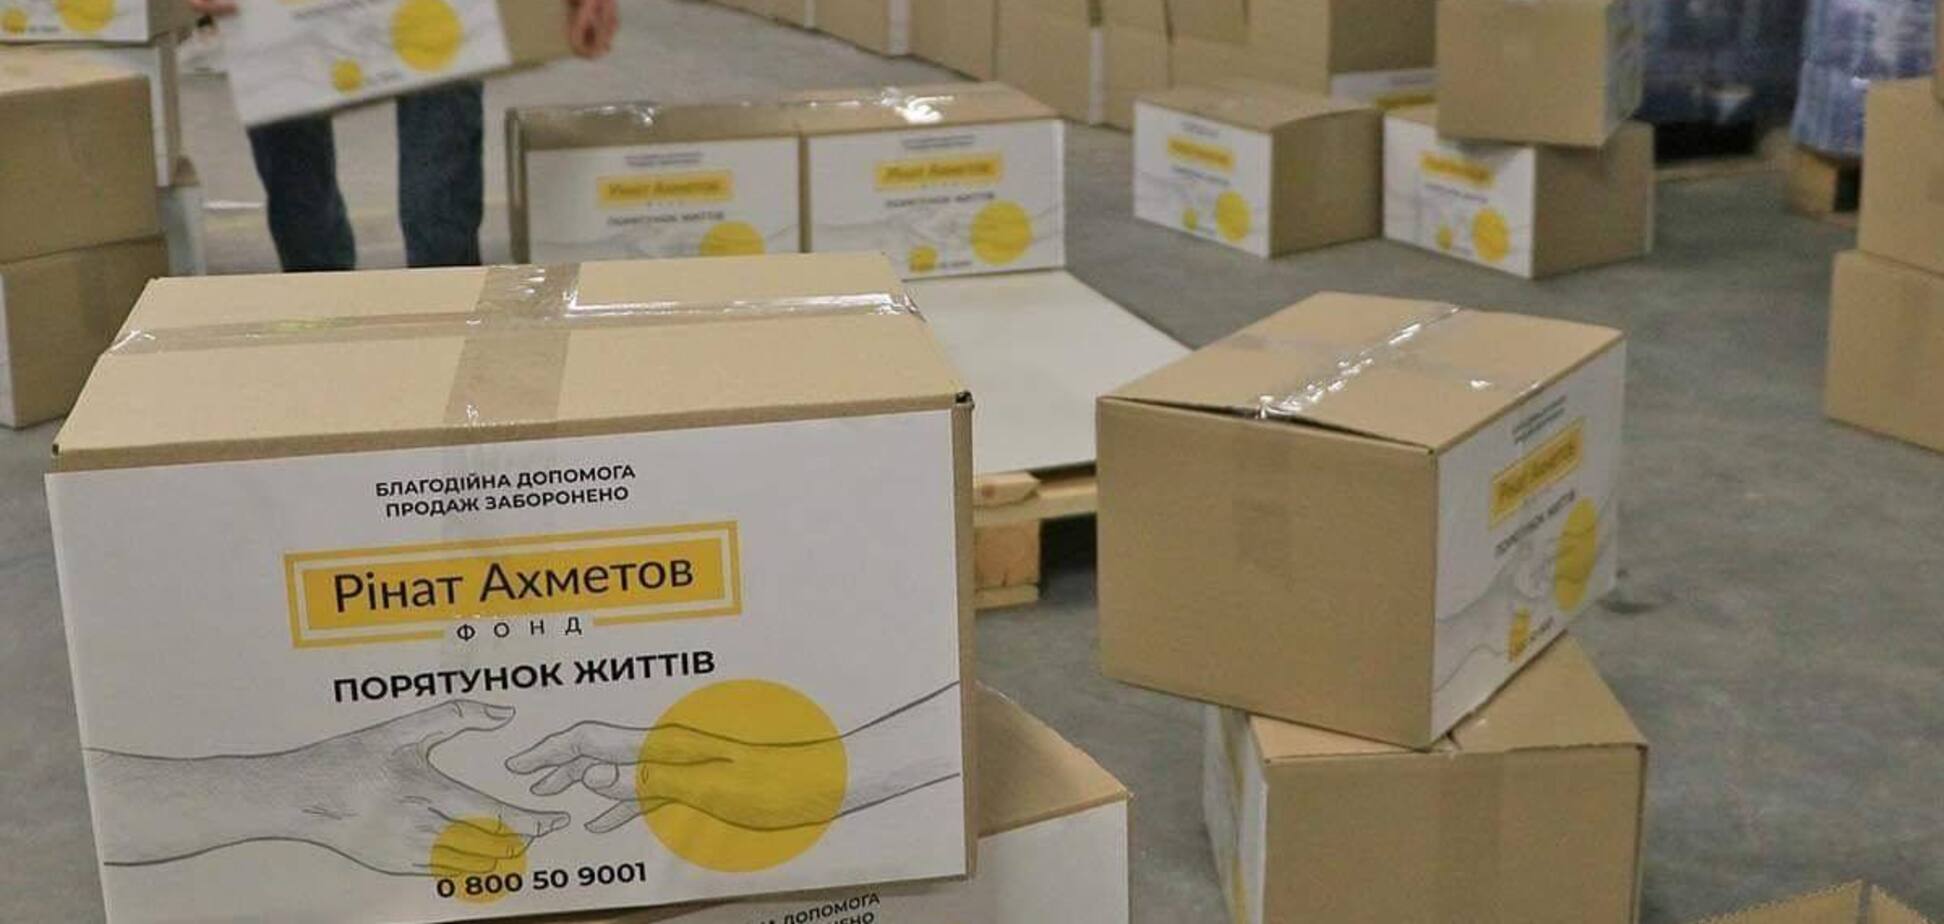 Київщина отримала чергову партію продуктів від Фонду Ахметова